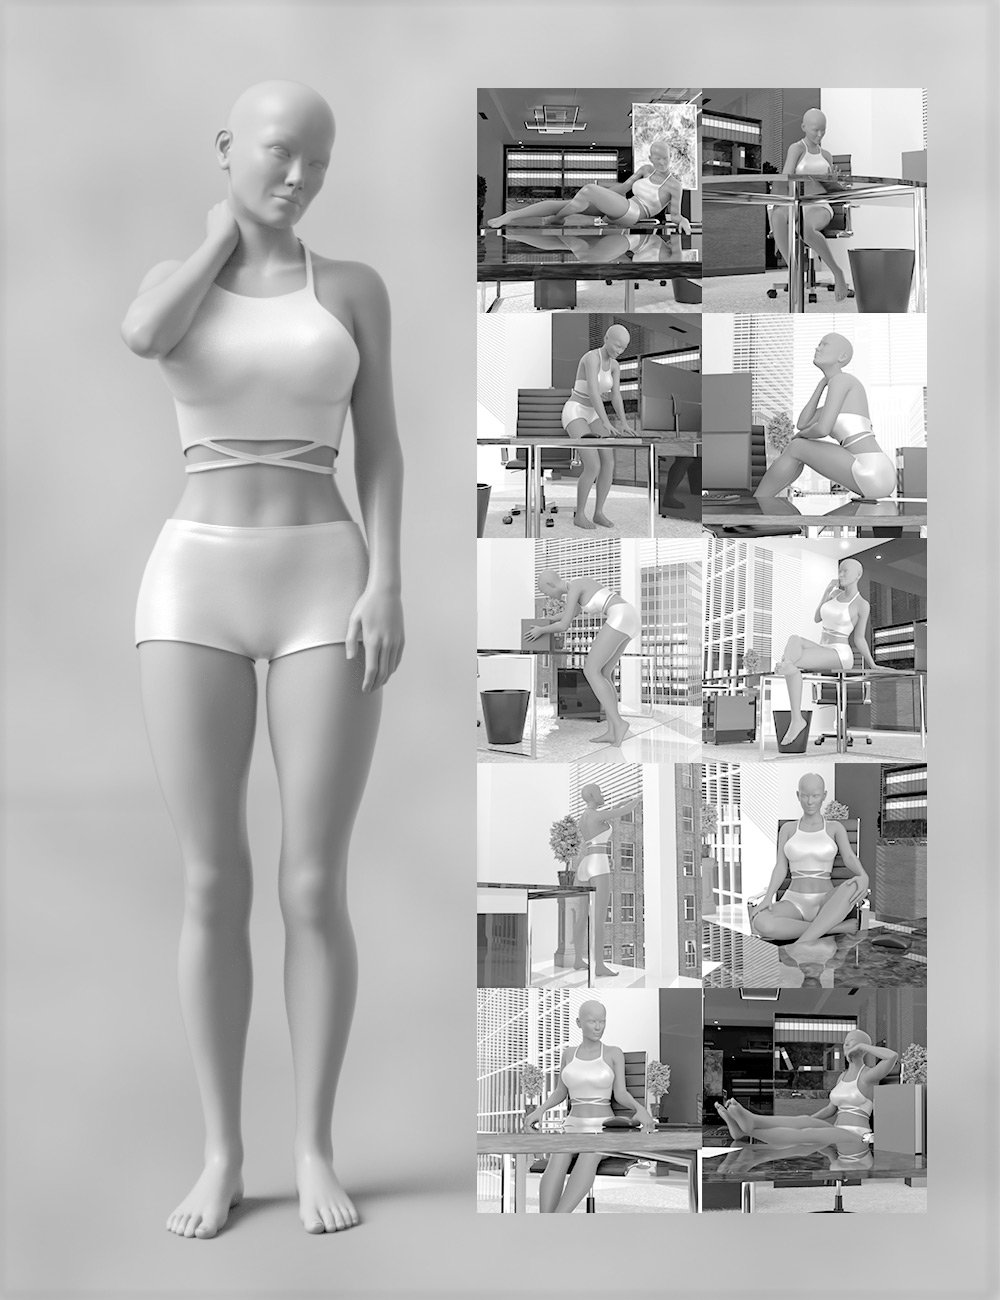 Amanda Mai for Genesis 8 Female And Luxury Office by: DreamlightWarloc, 3D Models by Daz 3D